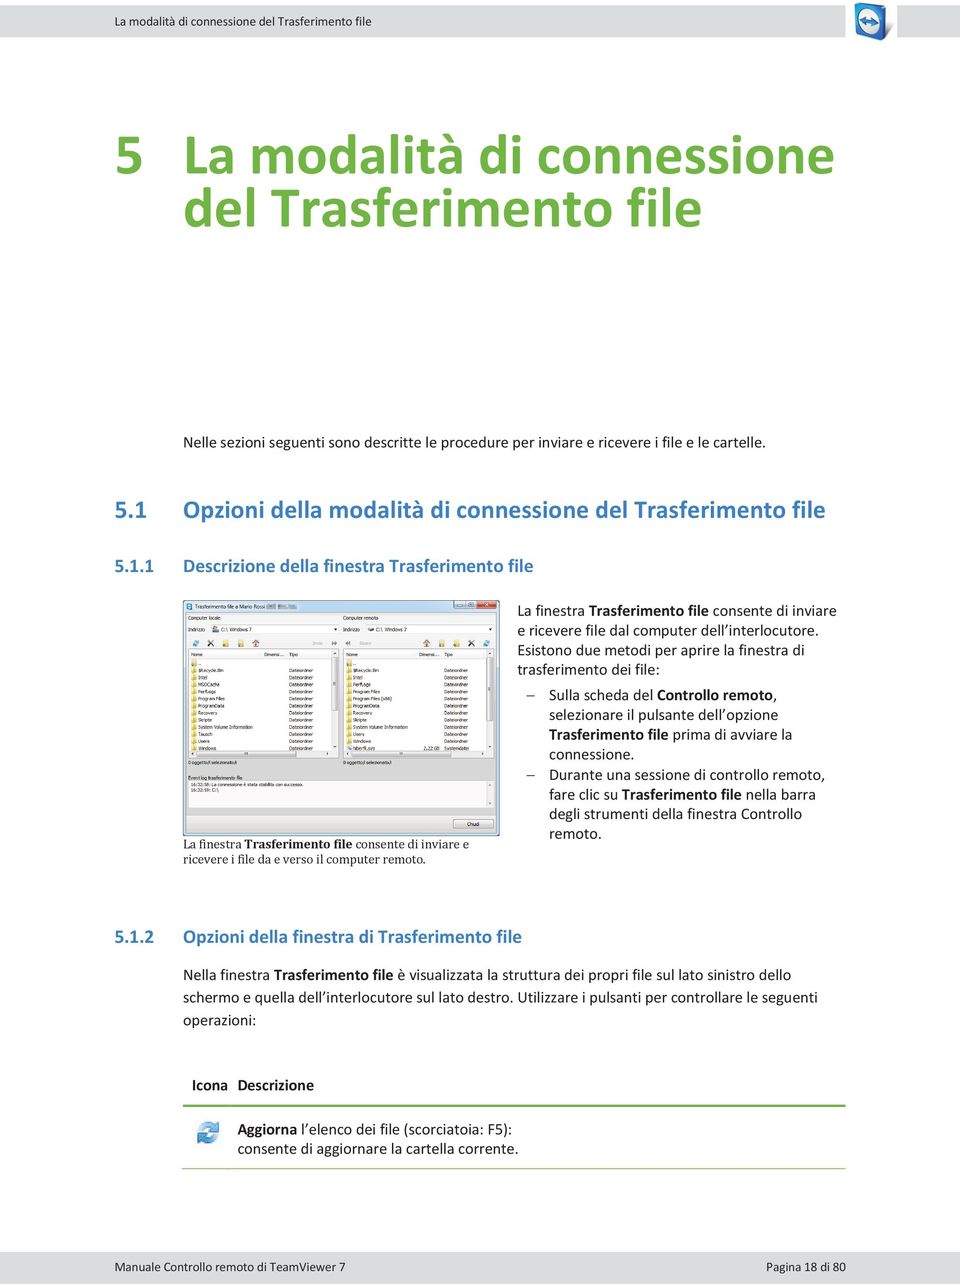 La finestra Trasferimento file consente di inviare e ricevere file dal computer dell interlocutore.